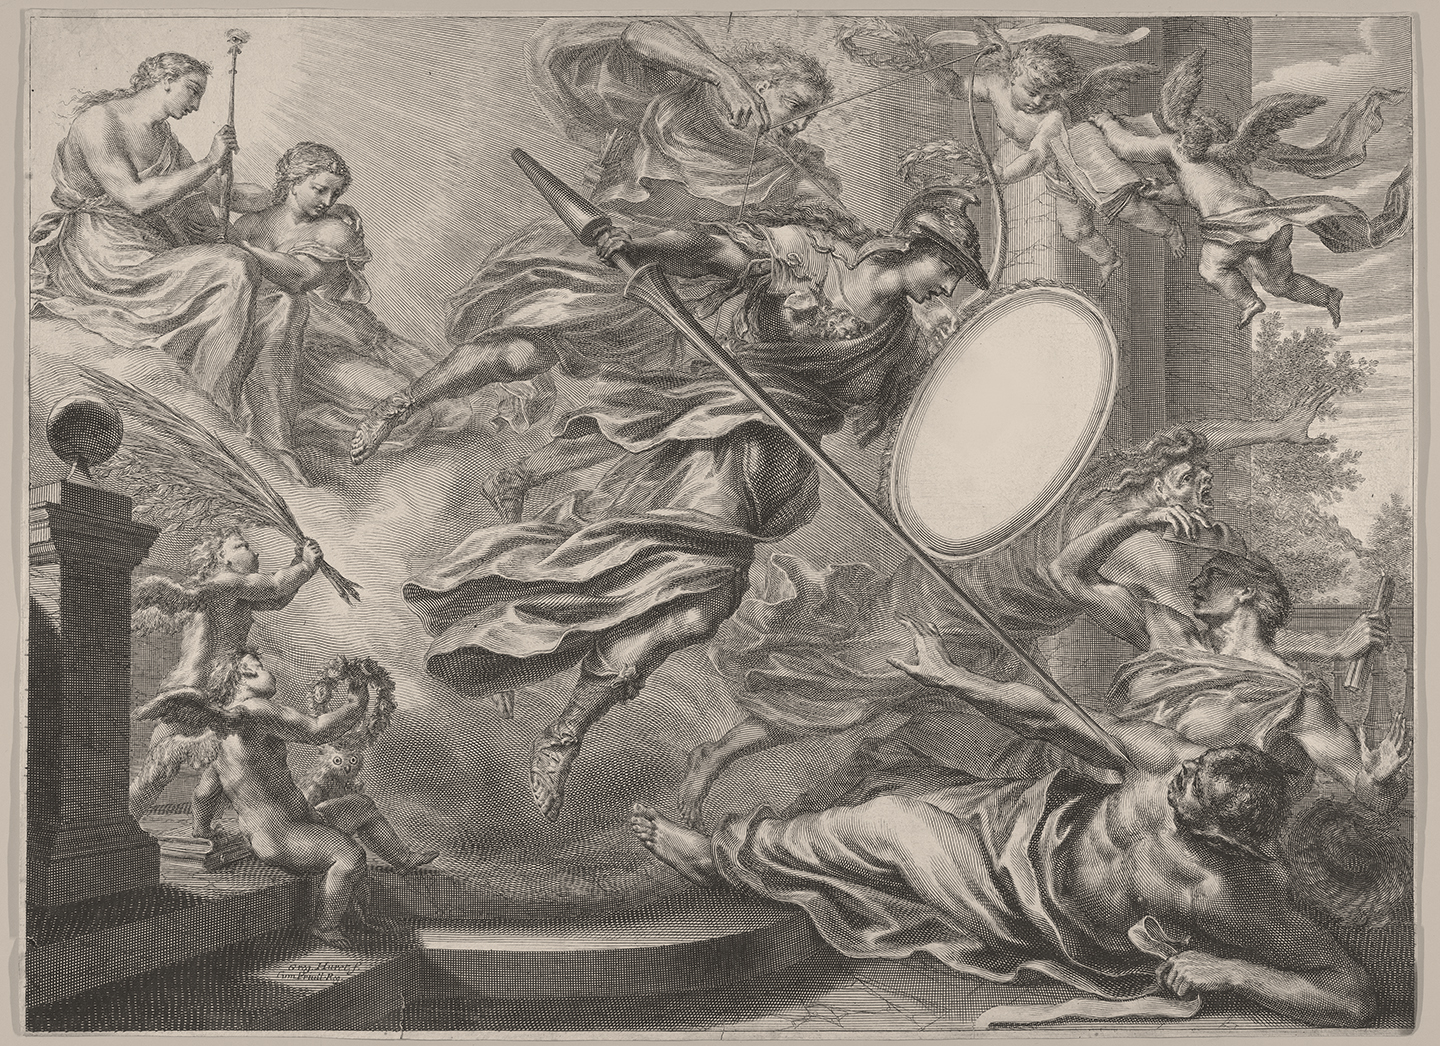 Tranh in Nữ thần Athena (Minerva) cầm khiên và giáo, nghệ sỹ Grégoire Huret, thế kỷ 17. Bảo tàng Nghệ thuật Metropolitan, Thành phố New York. (Ảnh: Tư liệu công cộng)